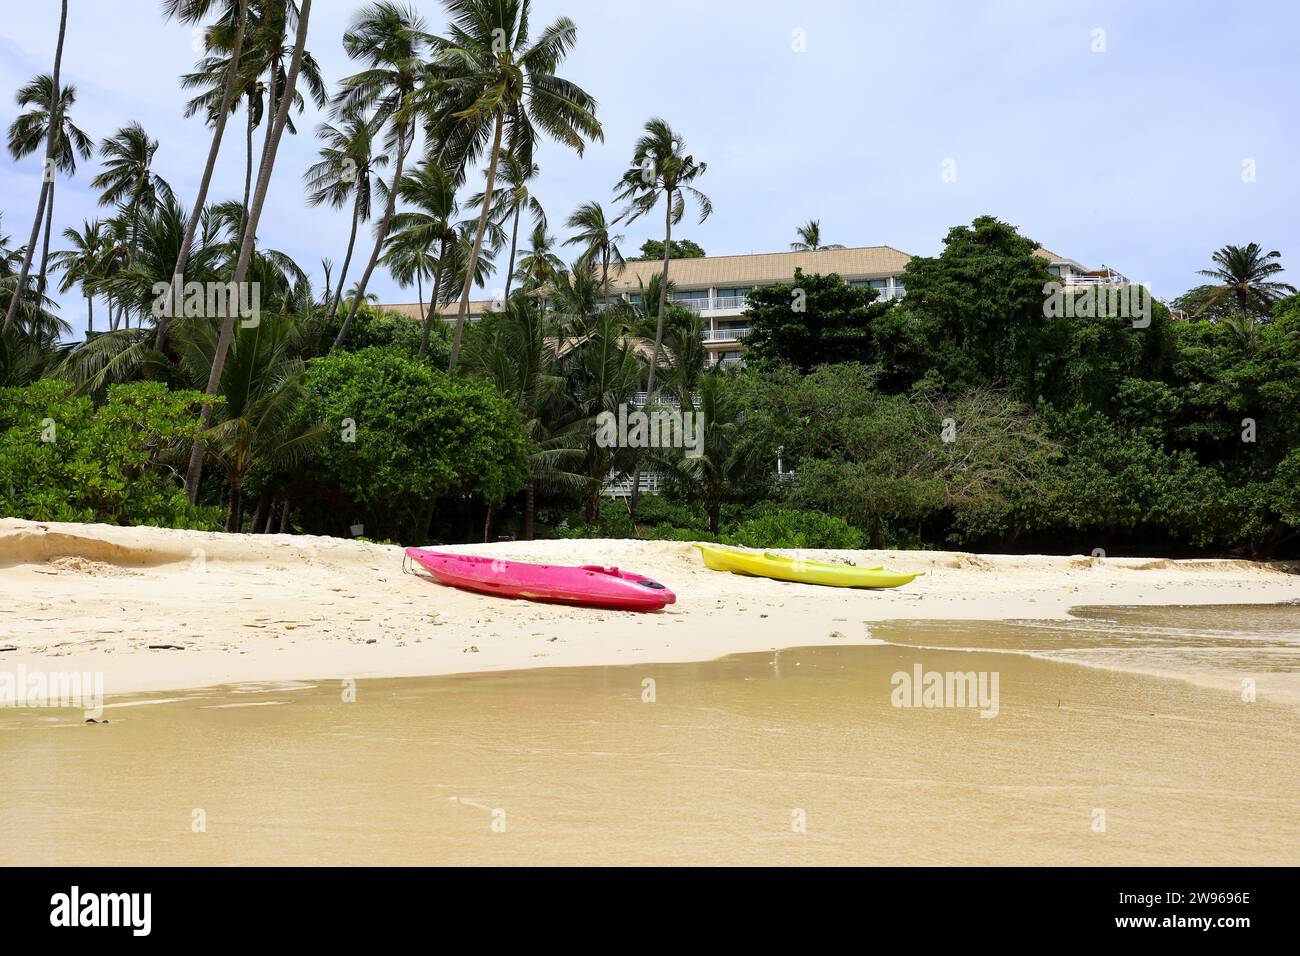 Cocotiers et canoës sur la plage de sable tropical. Station balnéaire, fond pittoresque pour les vacances et les voyages Banque D'Images